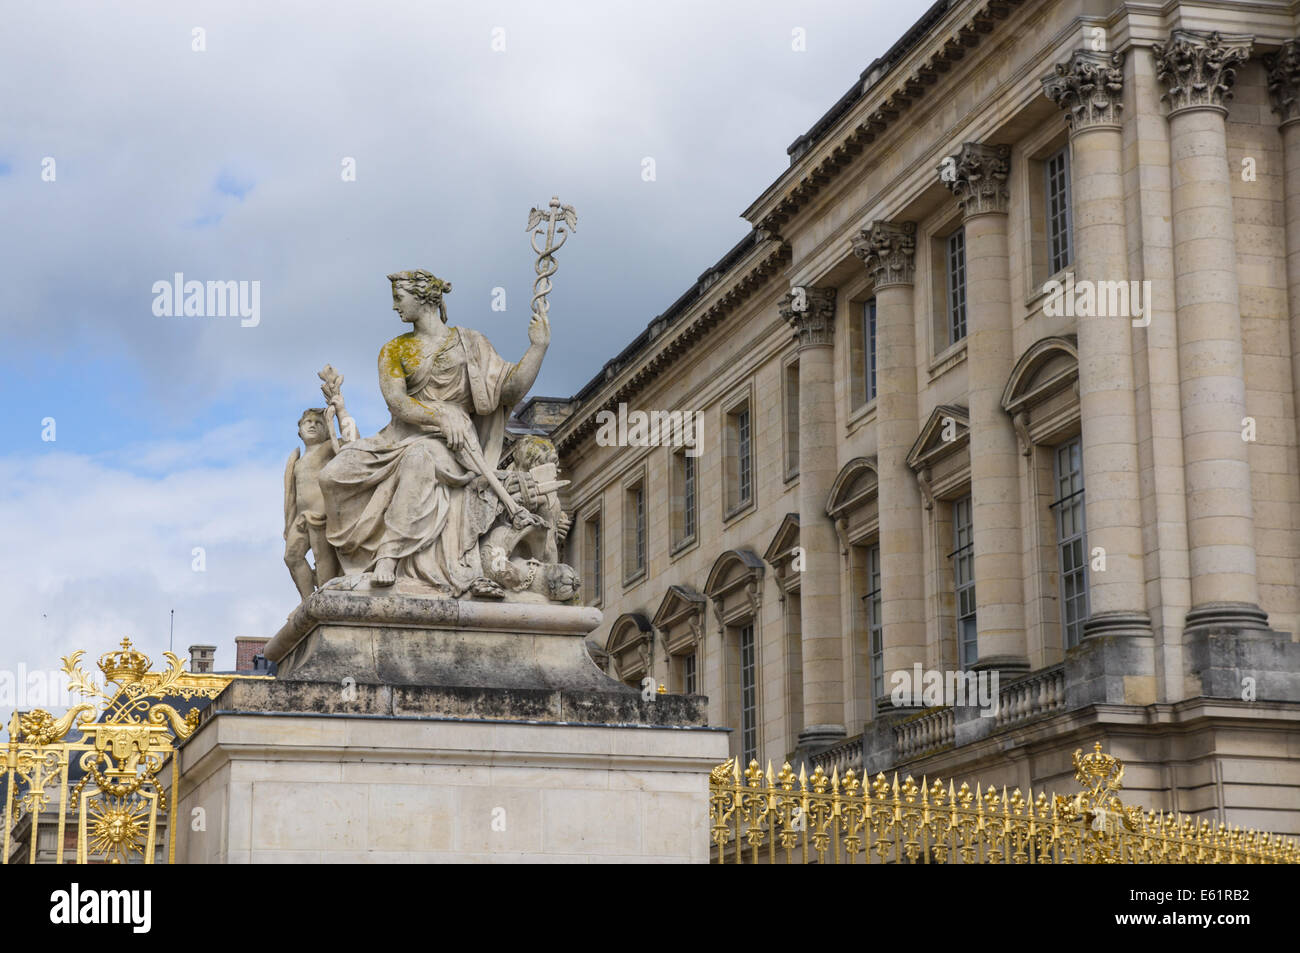 Statue neben dem Goldenen Tor des Palastes von Versailles [Chateau de Versailles] in Frankreich Stockfoto